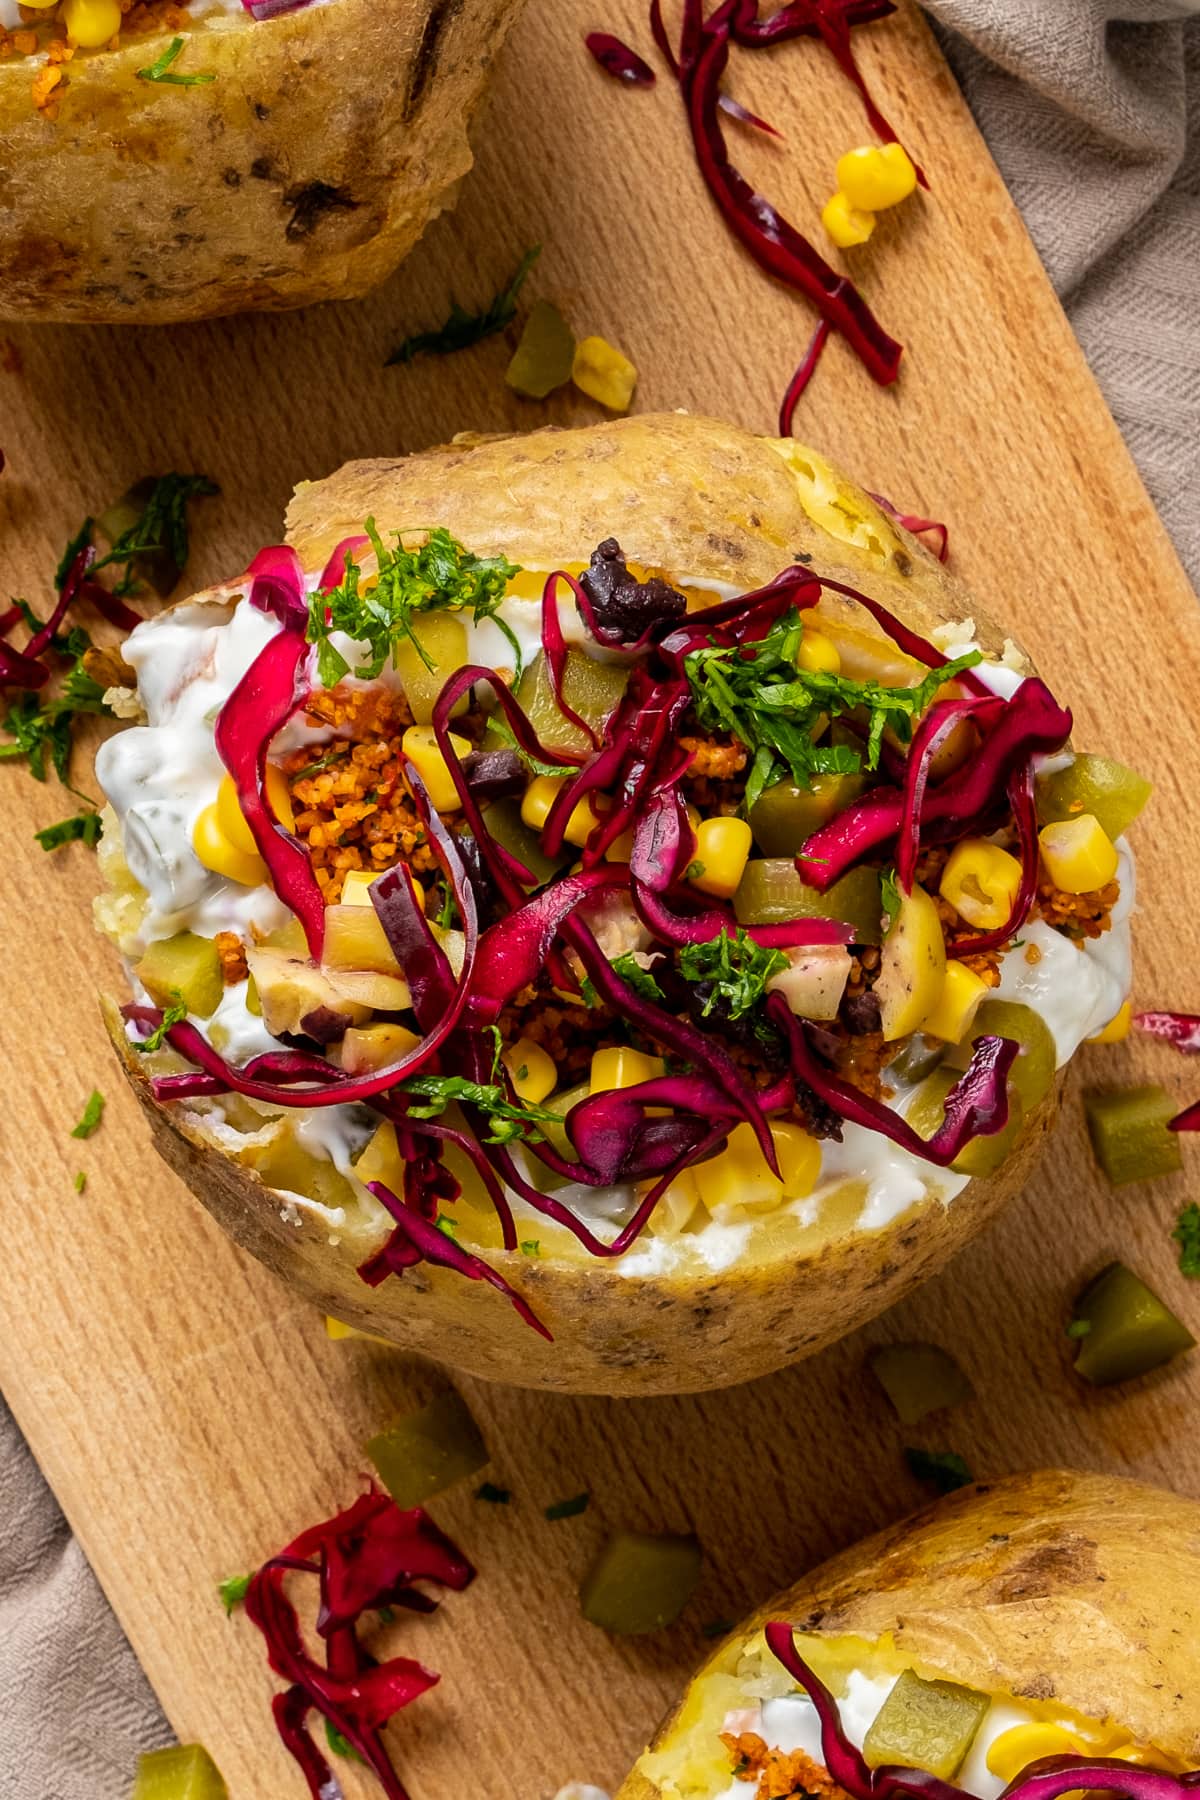 Kumpir装着磨碎的沙拉kisir，玉米，橄榄，莳萝泡菜和红卷心菜放在木板上。